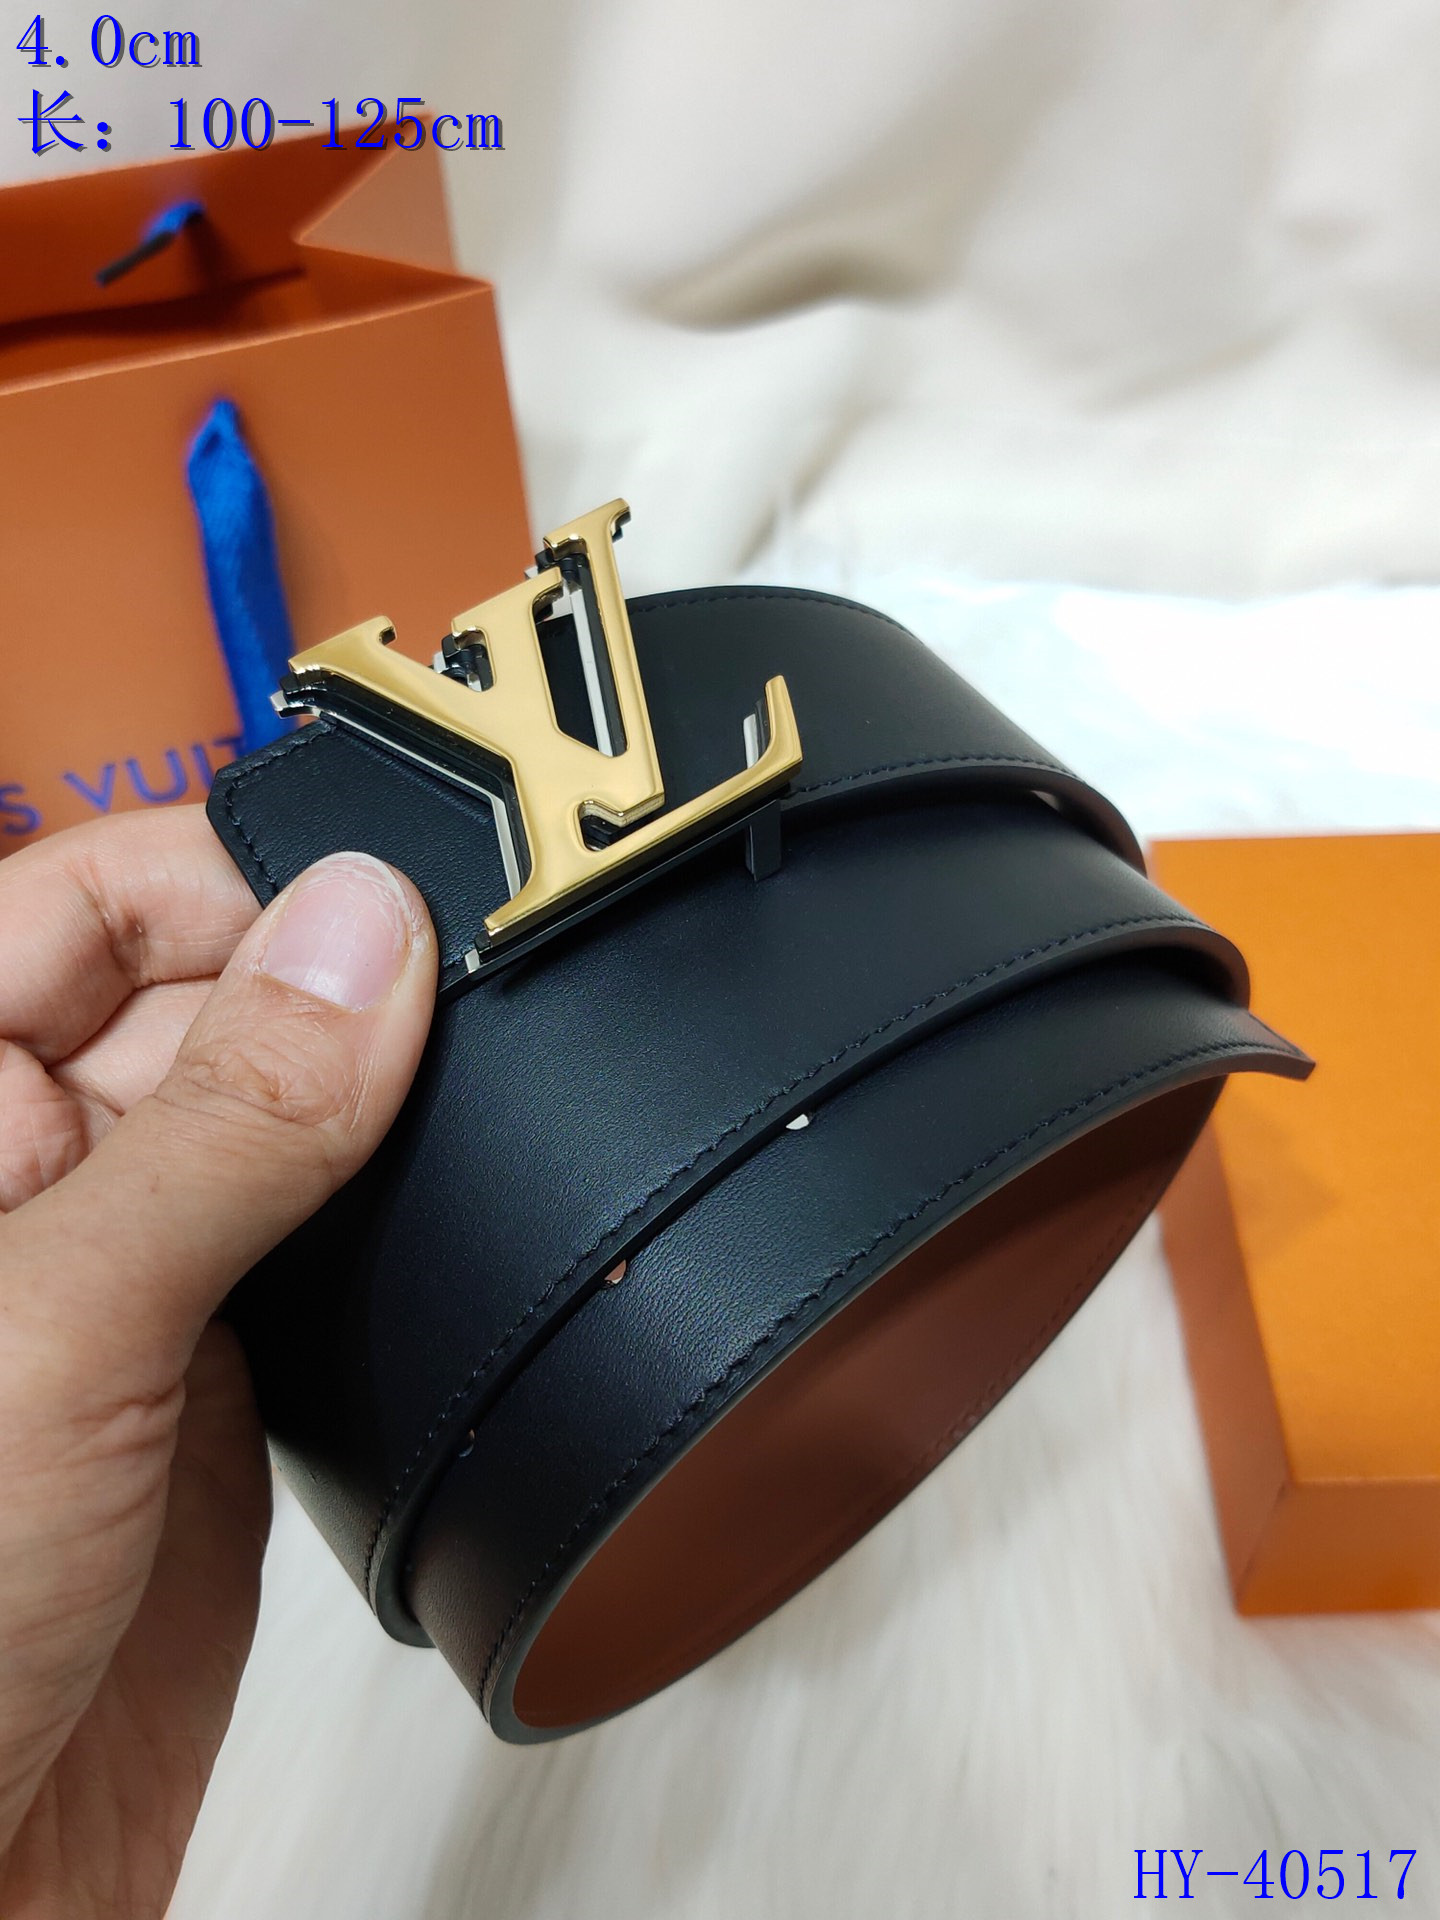 Cheap 2020 Cheap Louis Vuitton 4.0 cm Width Belts # 217922,$49 [FB217922] - Designer ...